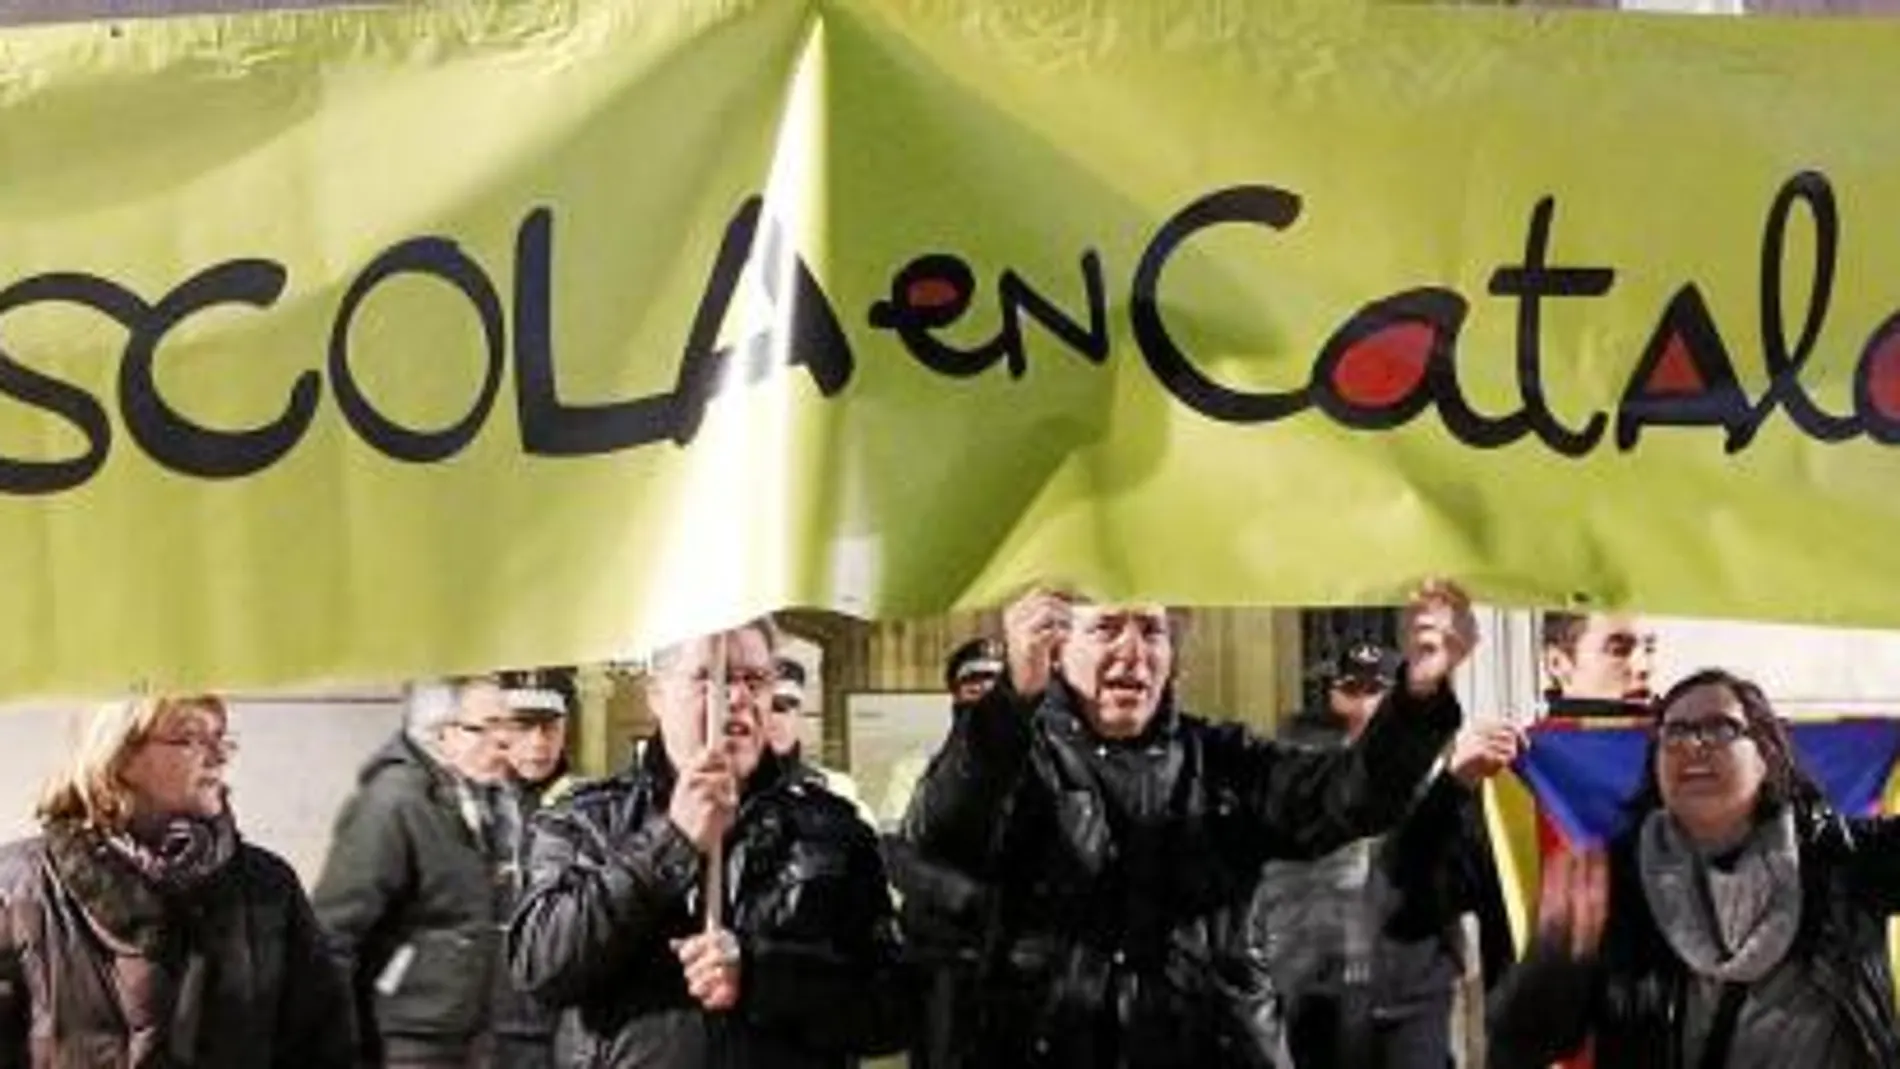 Los profesores se manifestaron ayer en Barcelona contra los recortes en la Educación pública